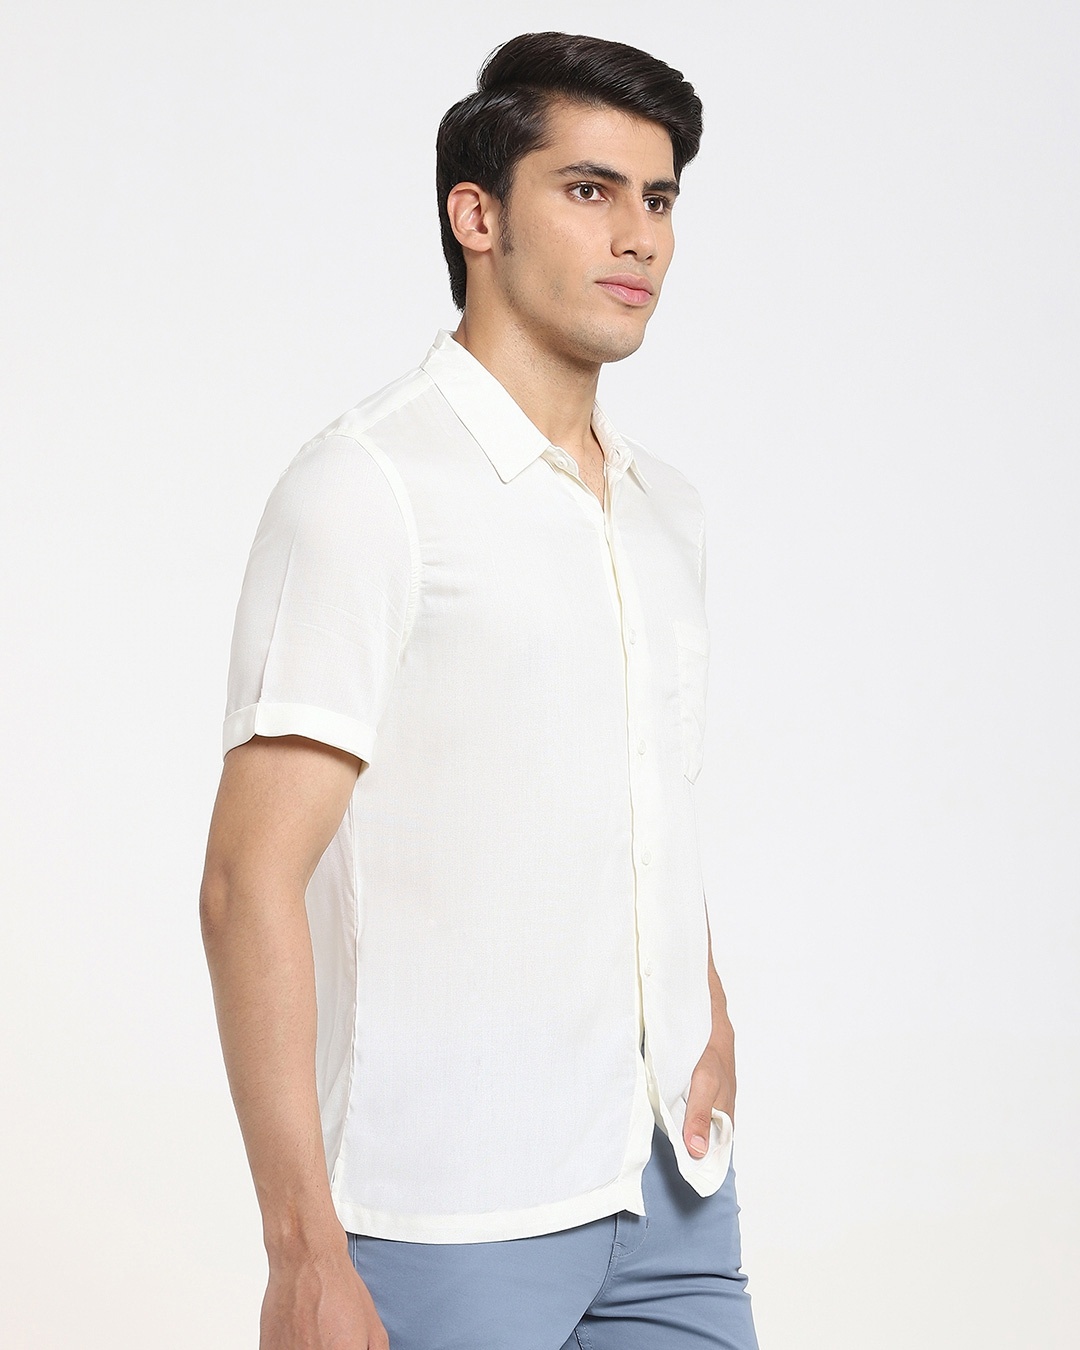 Buy Cream Men's Half Sleeves Shirt for Men white Online at Bewakoof